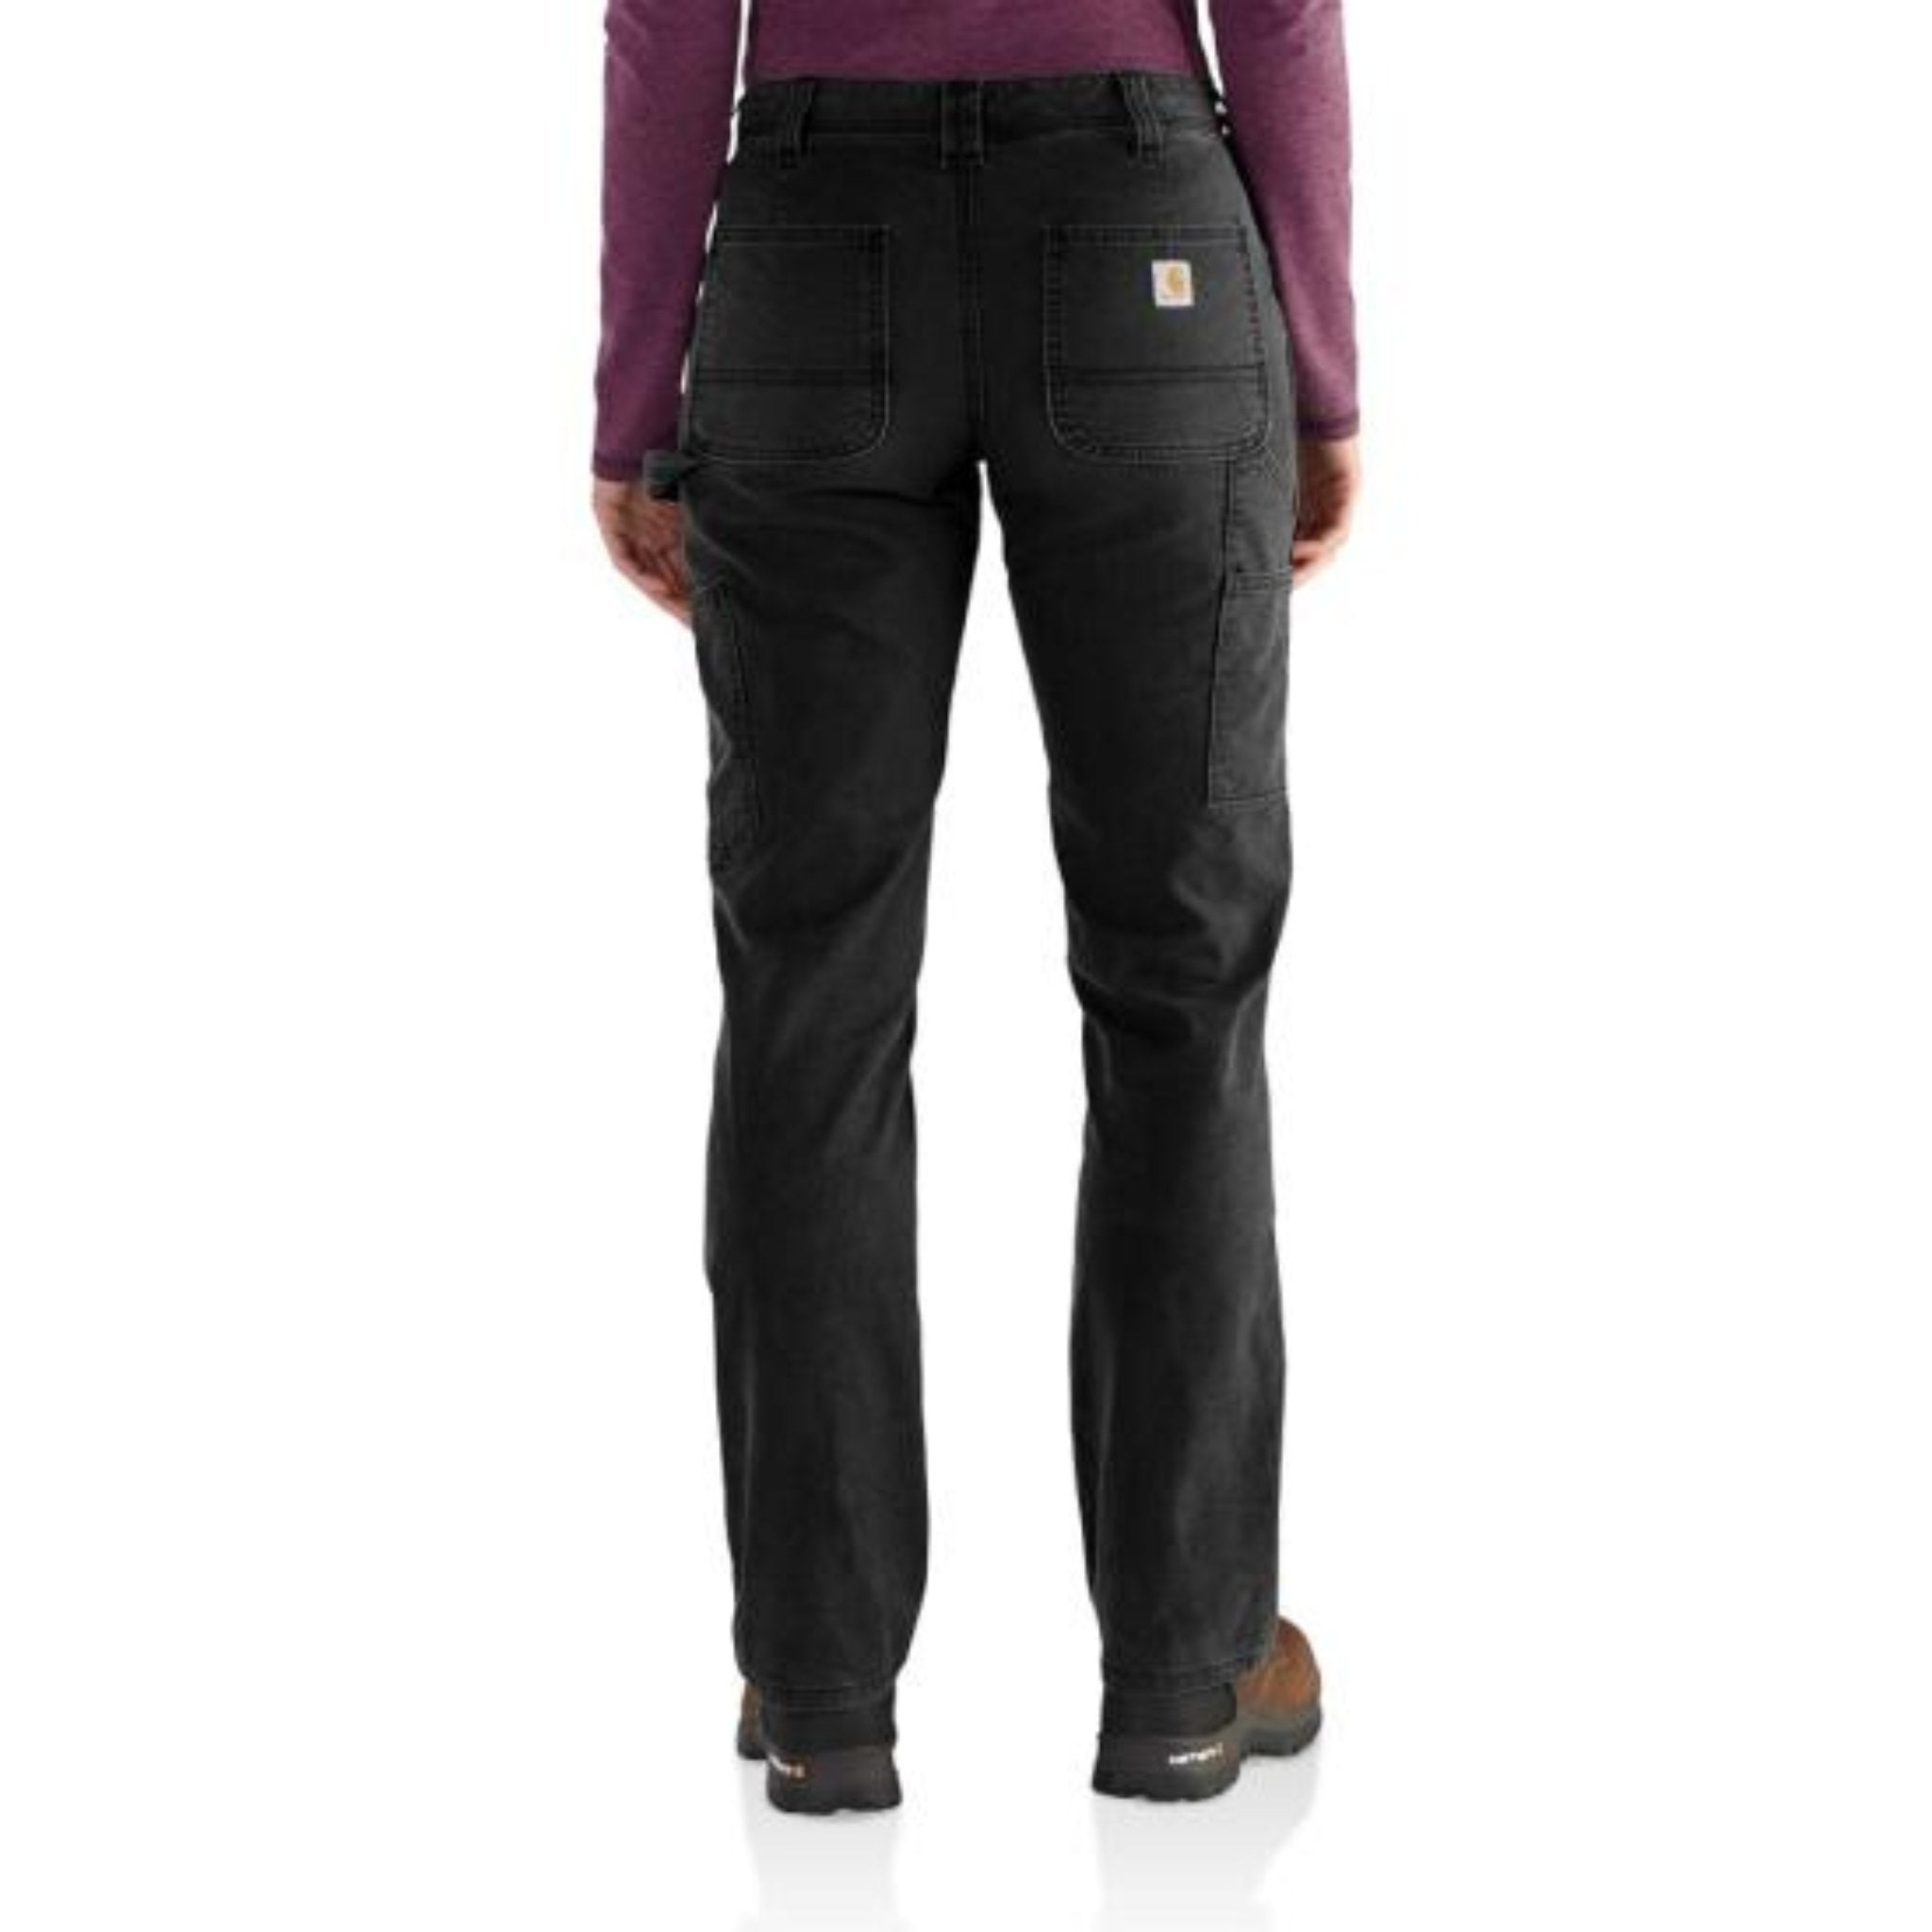 Carhartt Women's Slim Fit Crawford Pant Black Size 14 Regular